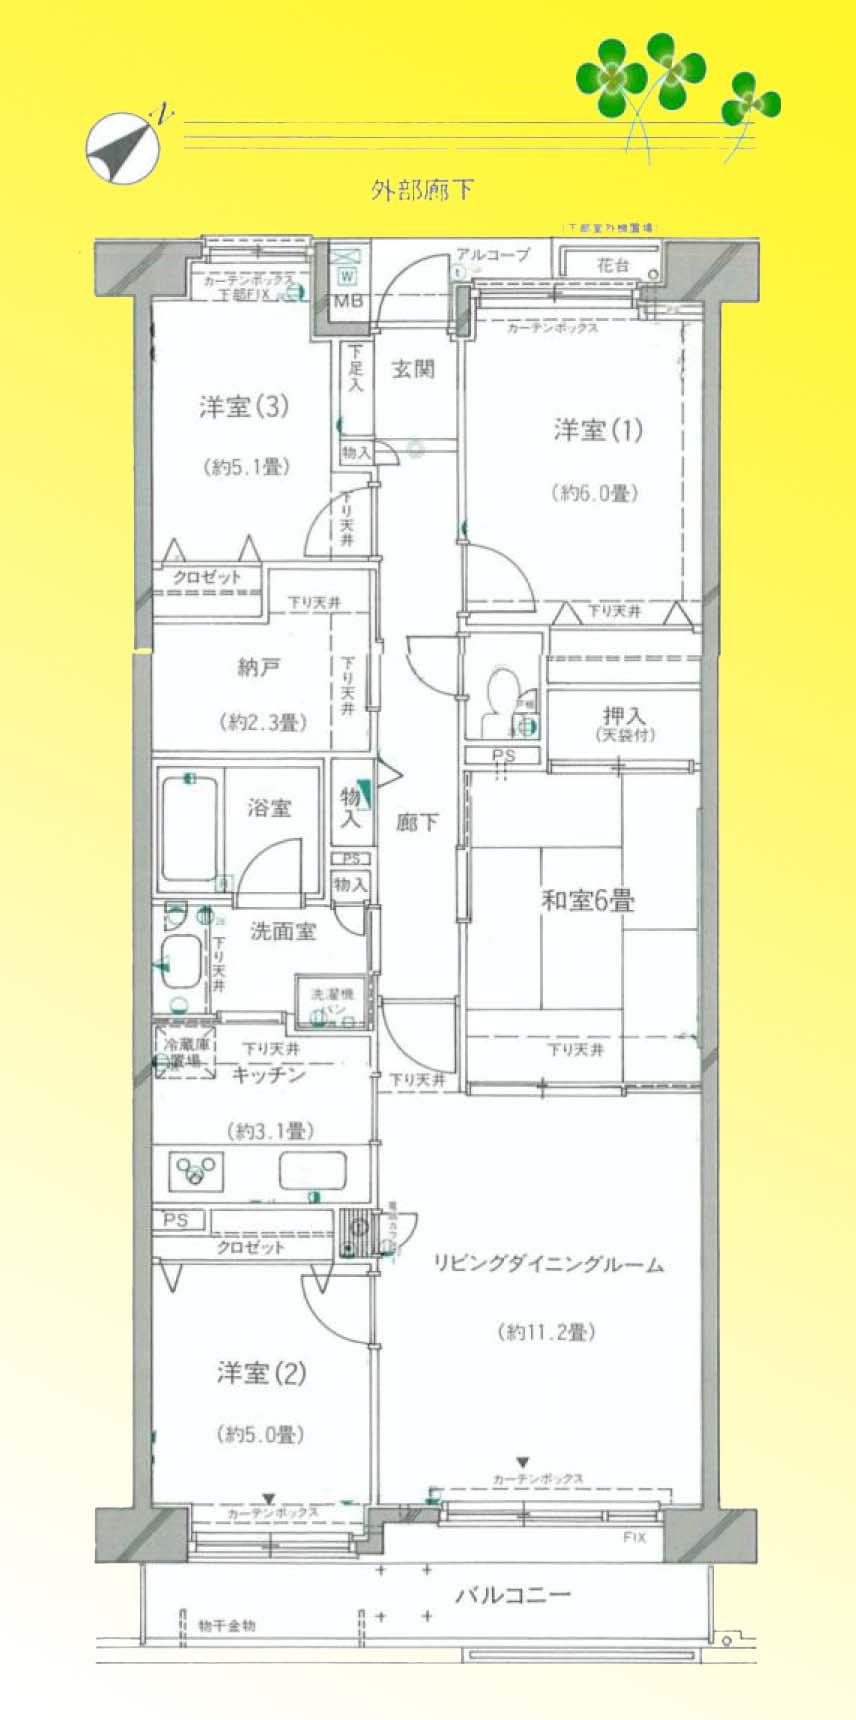 Floor plan. 4LK + S (storeroom), Price 15 million yen, Occupied area 85.76 sq m , Between the balcony area 8.7 sq m floor plan